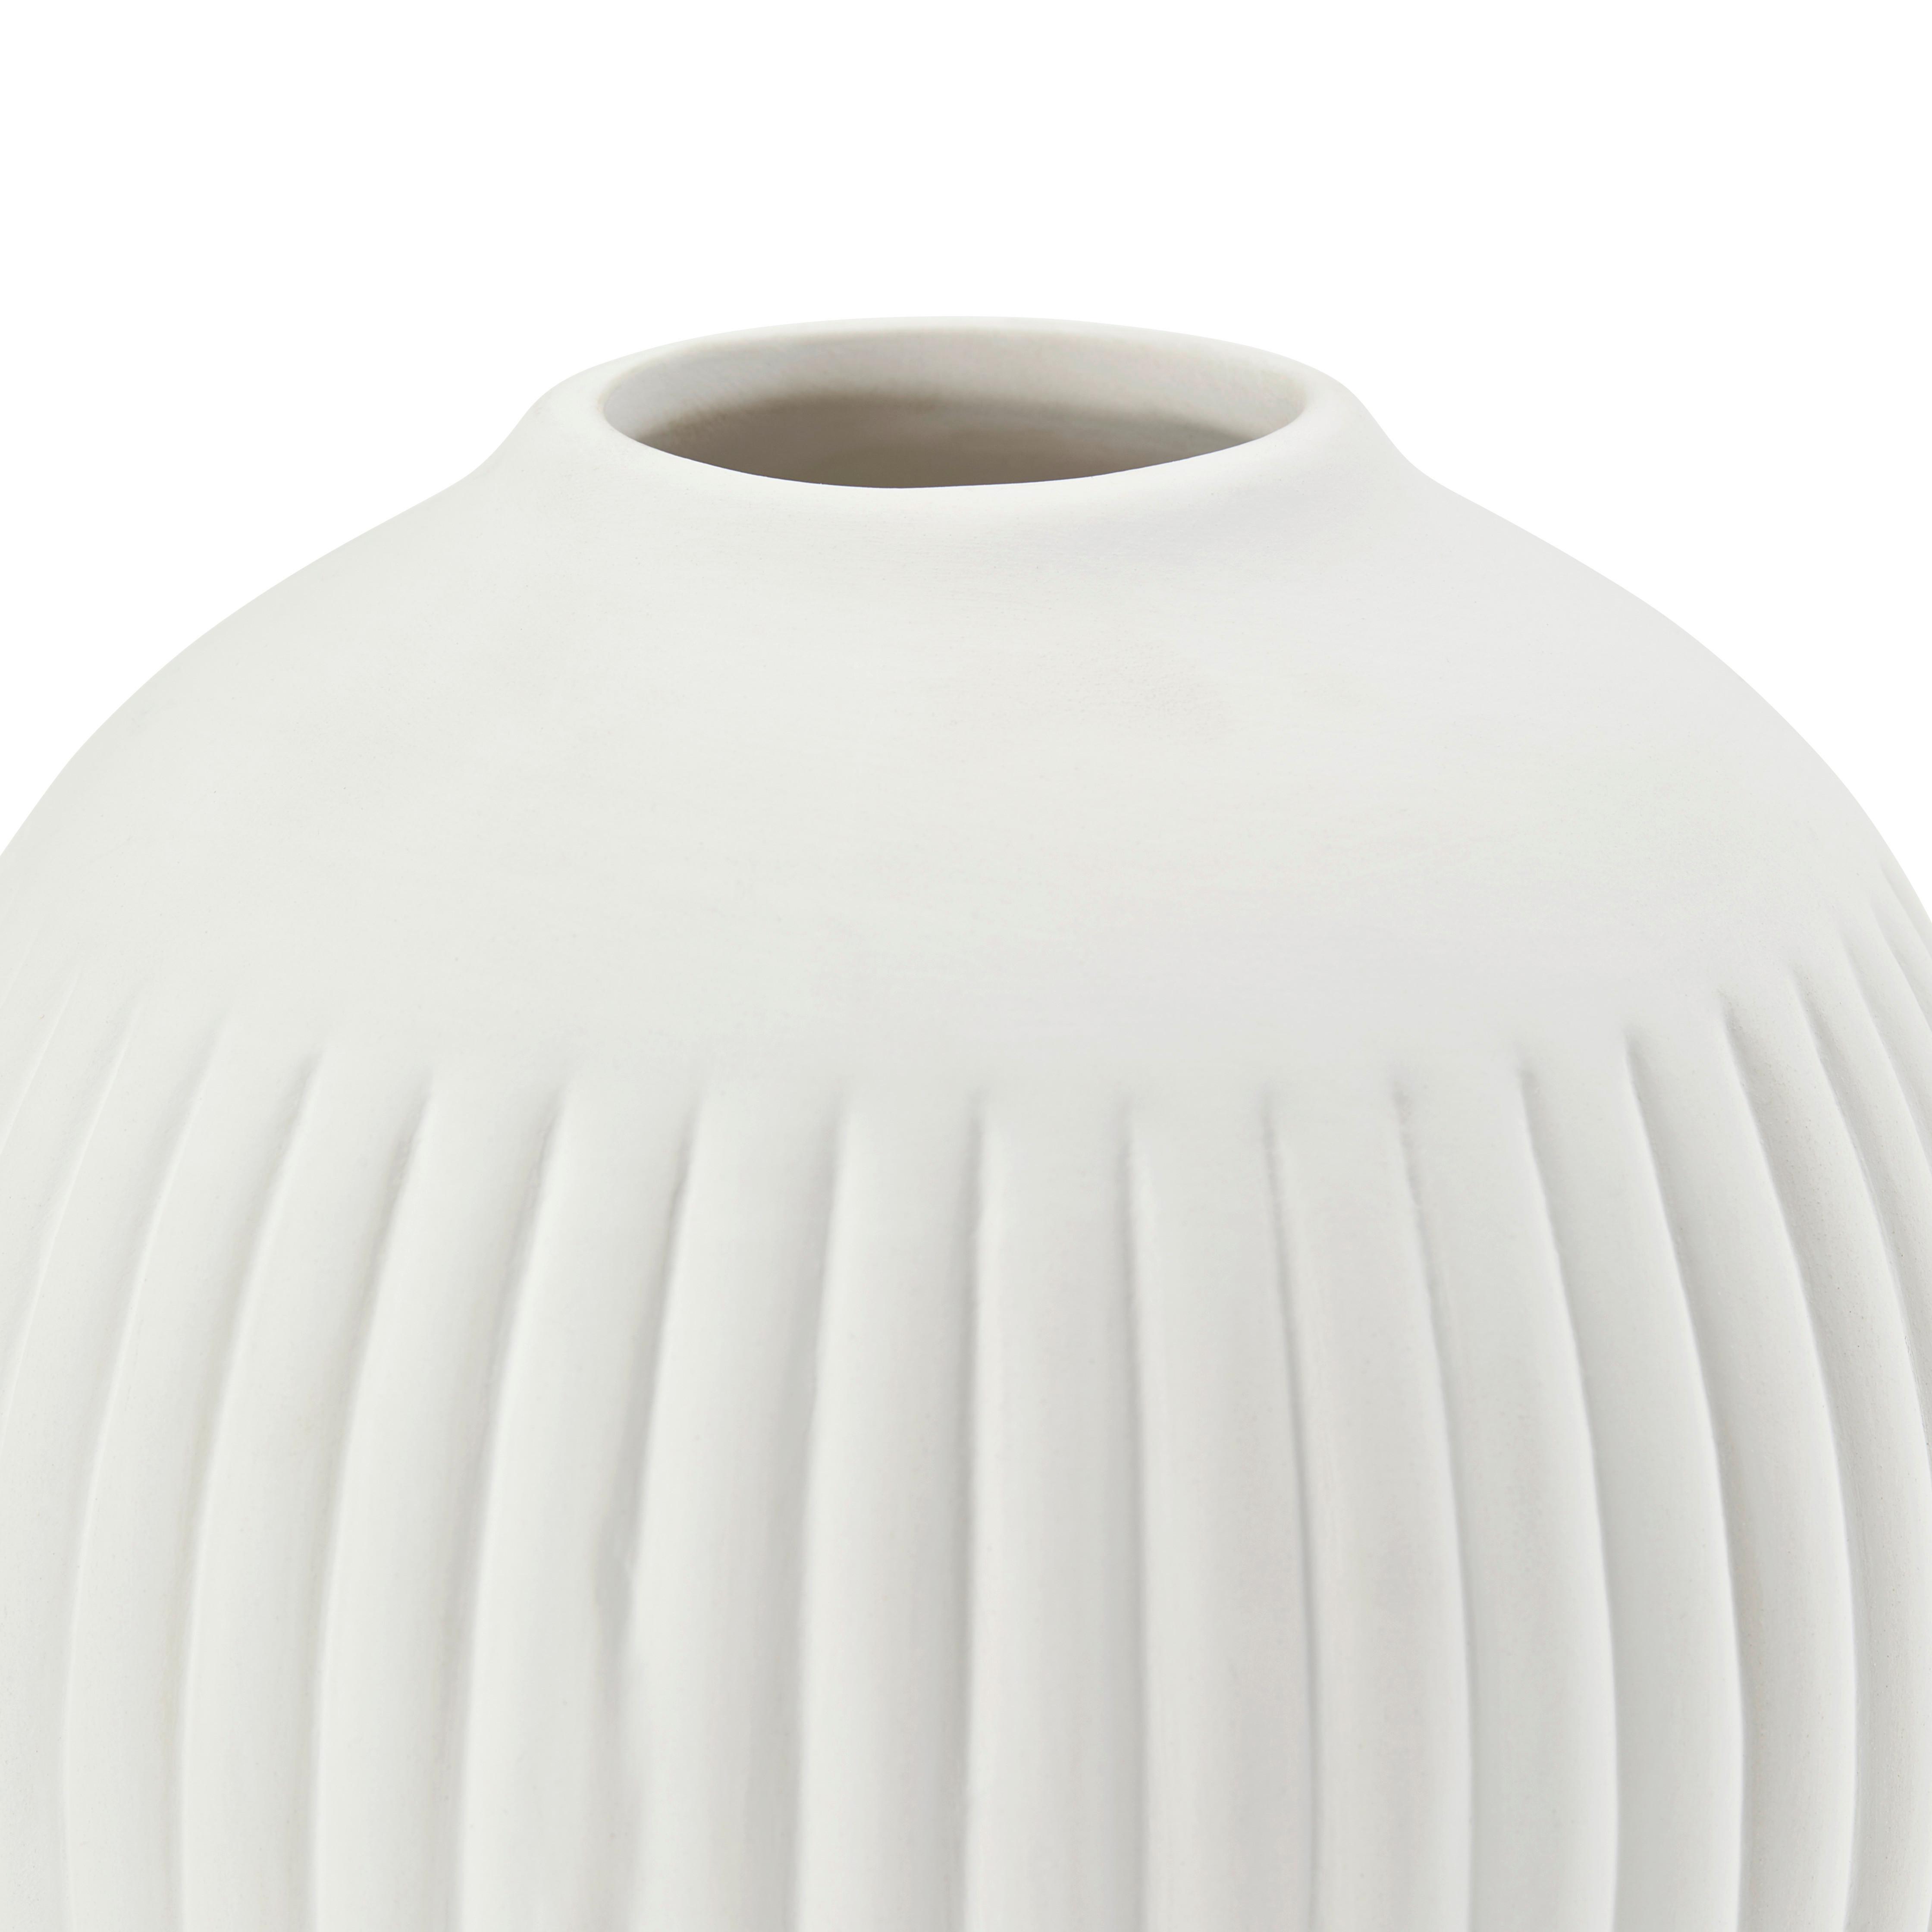 Vase Hergen Rund Aus Keramik Weiß H: 11,5 cm - Weiß, MODERN, Keramik (12/11,5cm) - Luca Bessoni